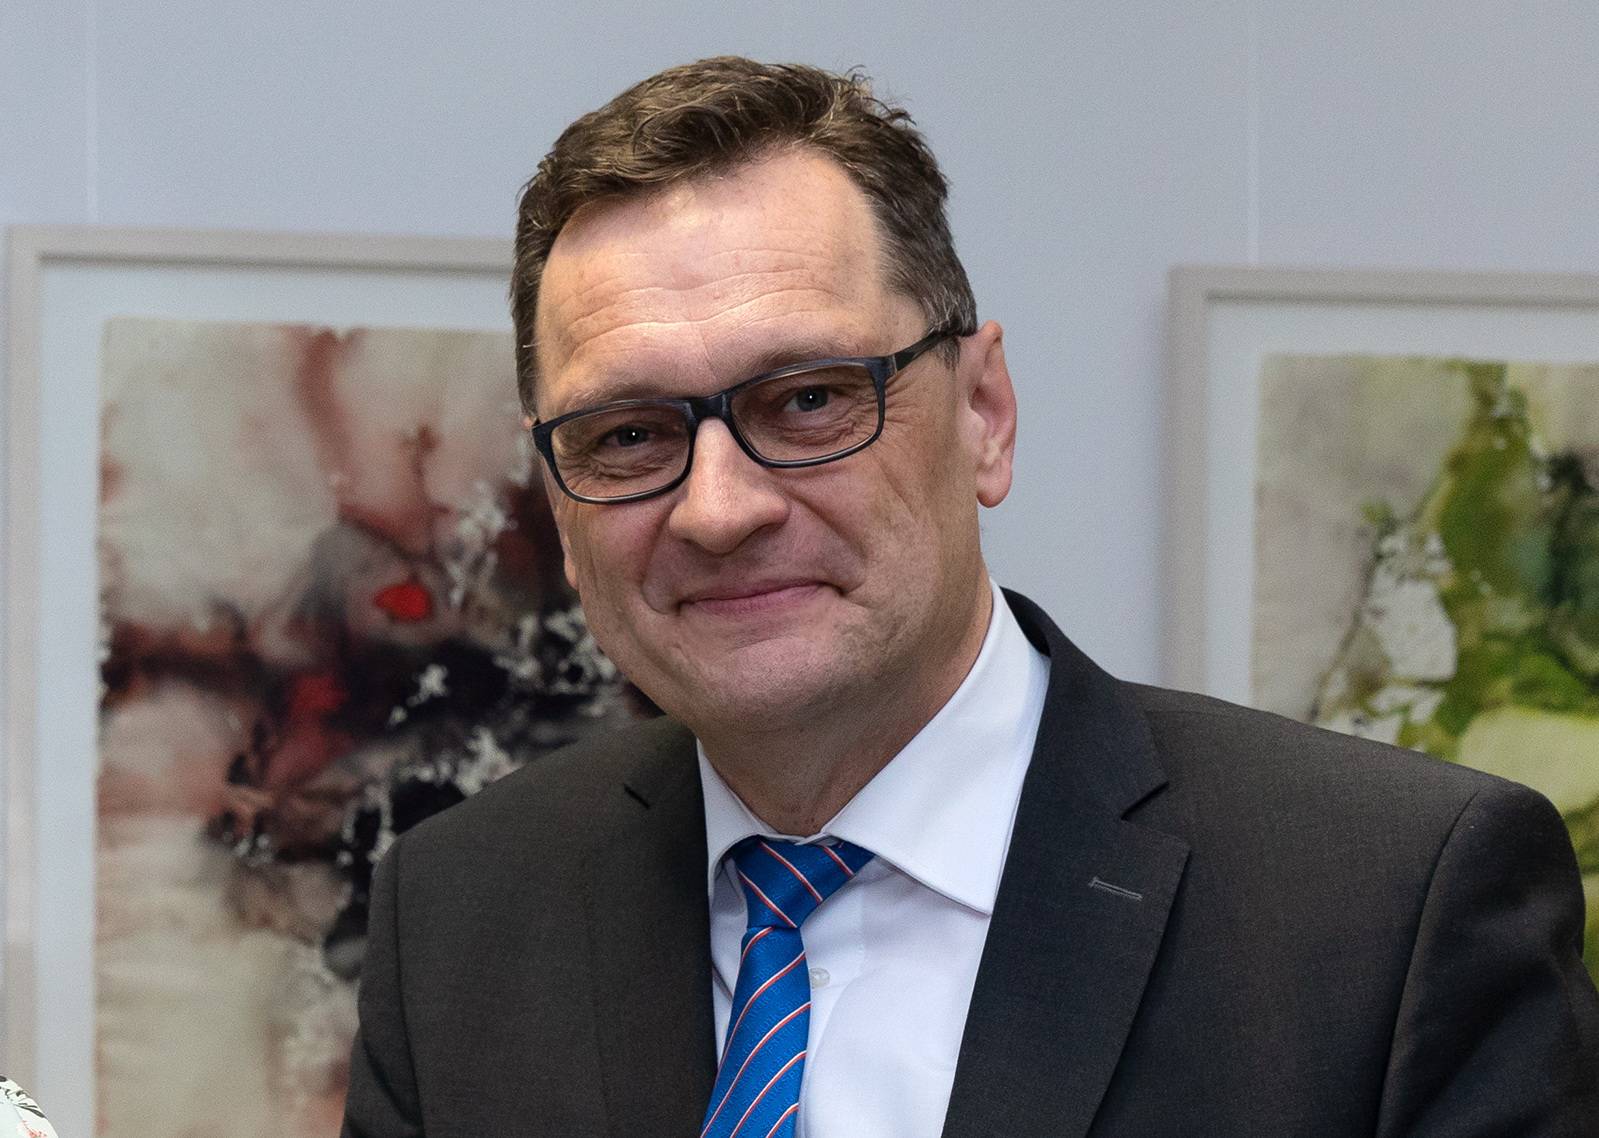 Swidbert Obermüller ist Vertriebsbeauftragter der Sparda-Bank